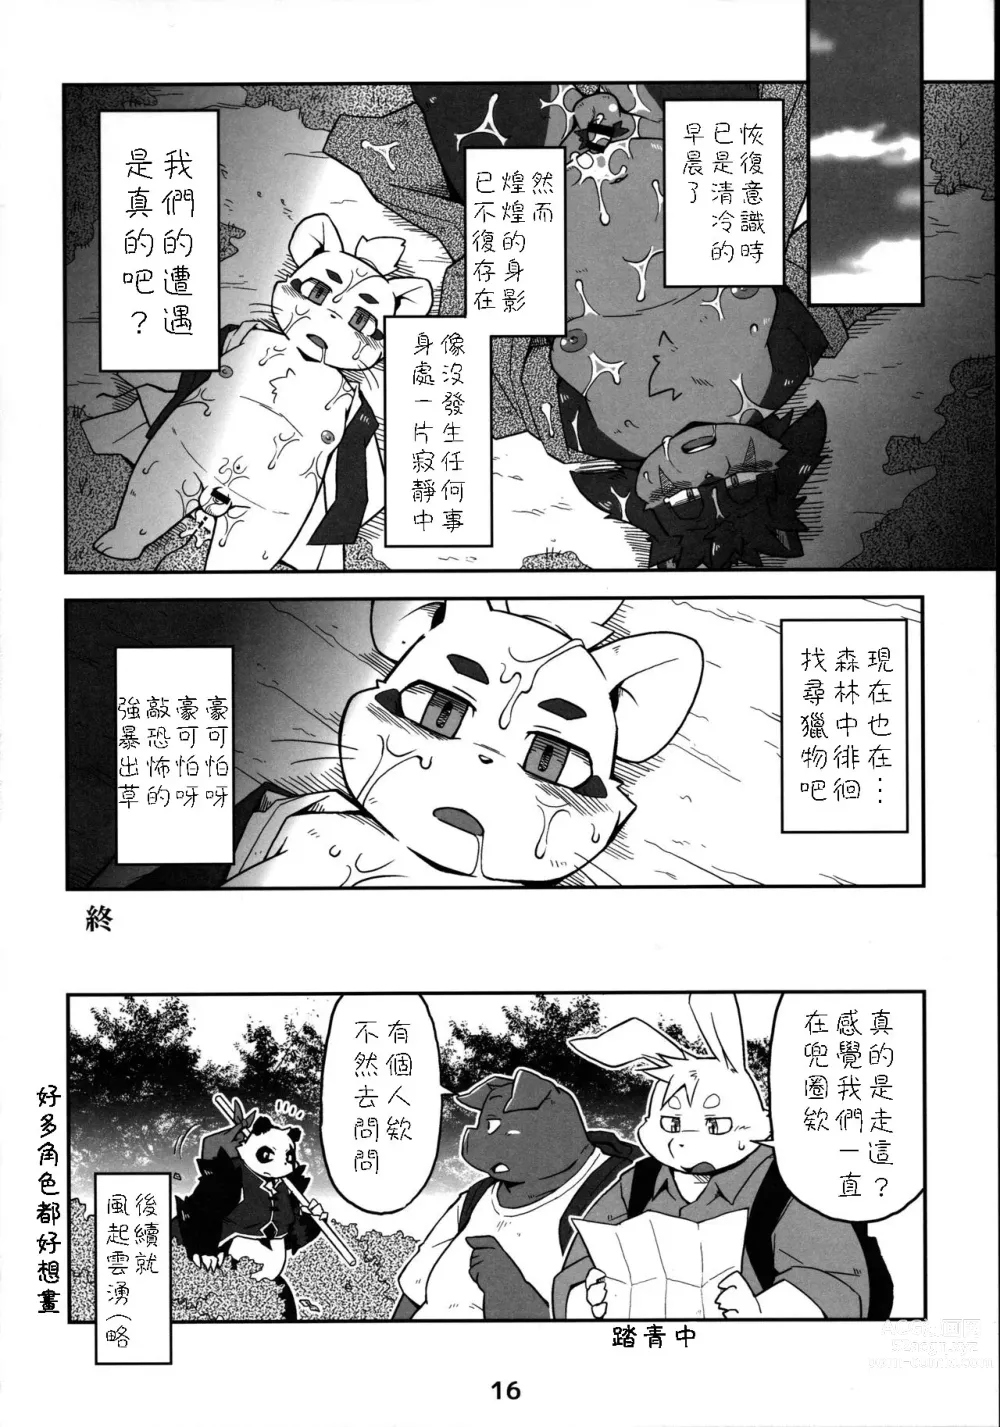 Page 15 of doujinshi Moero Fanfan